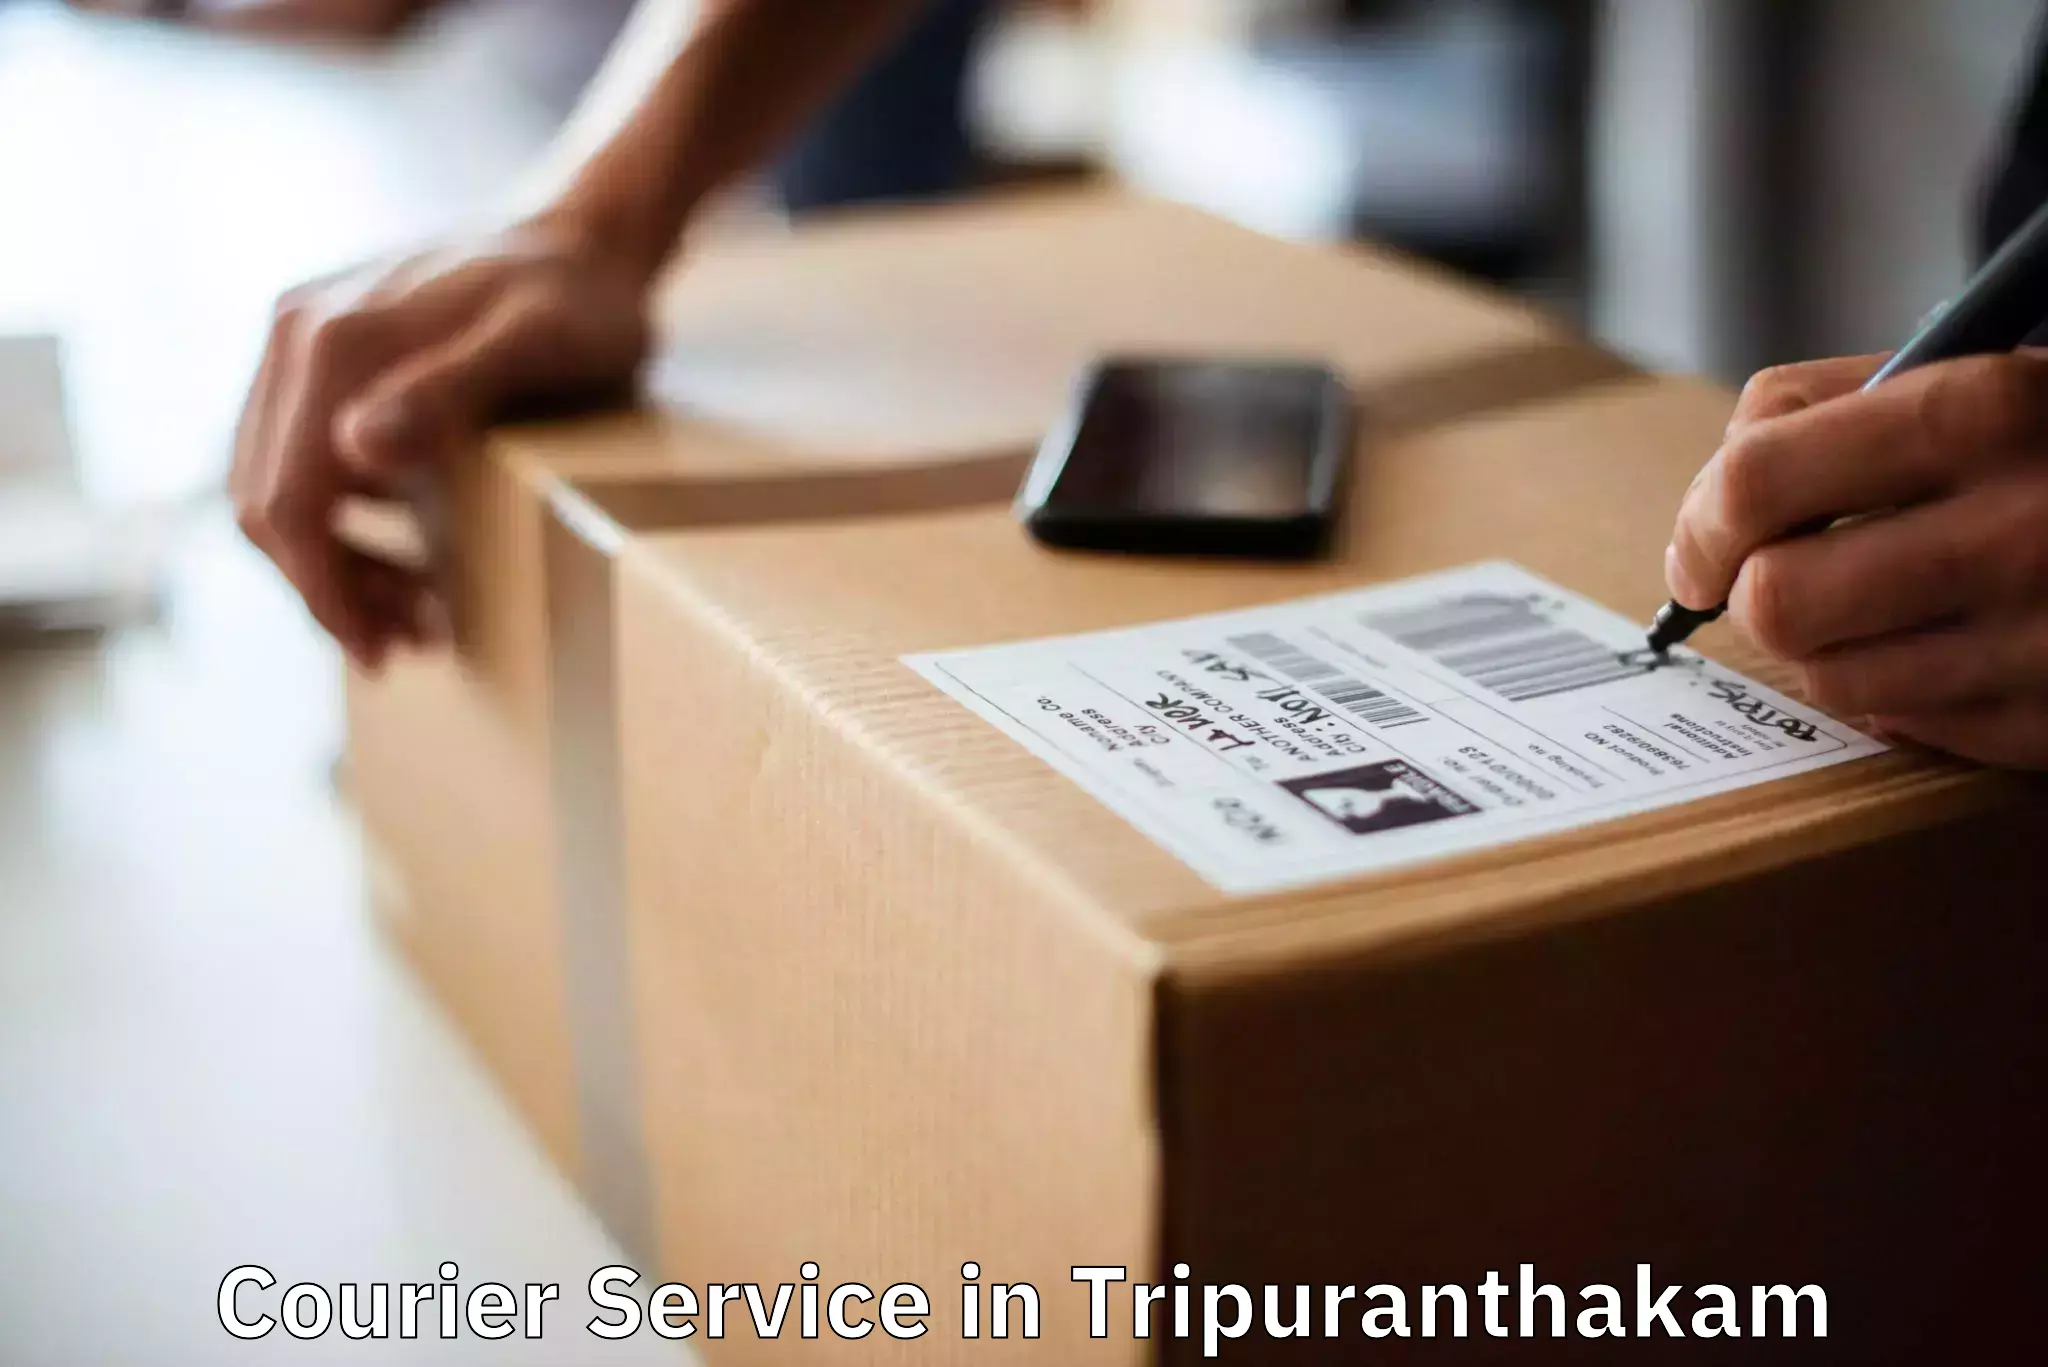 Bulk shipment in Tripuranthakam